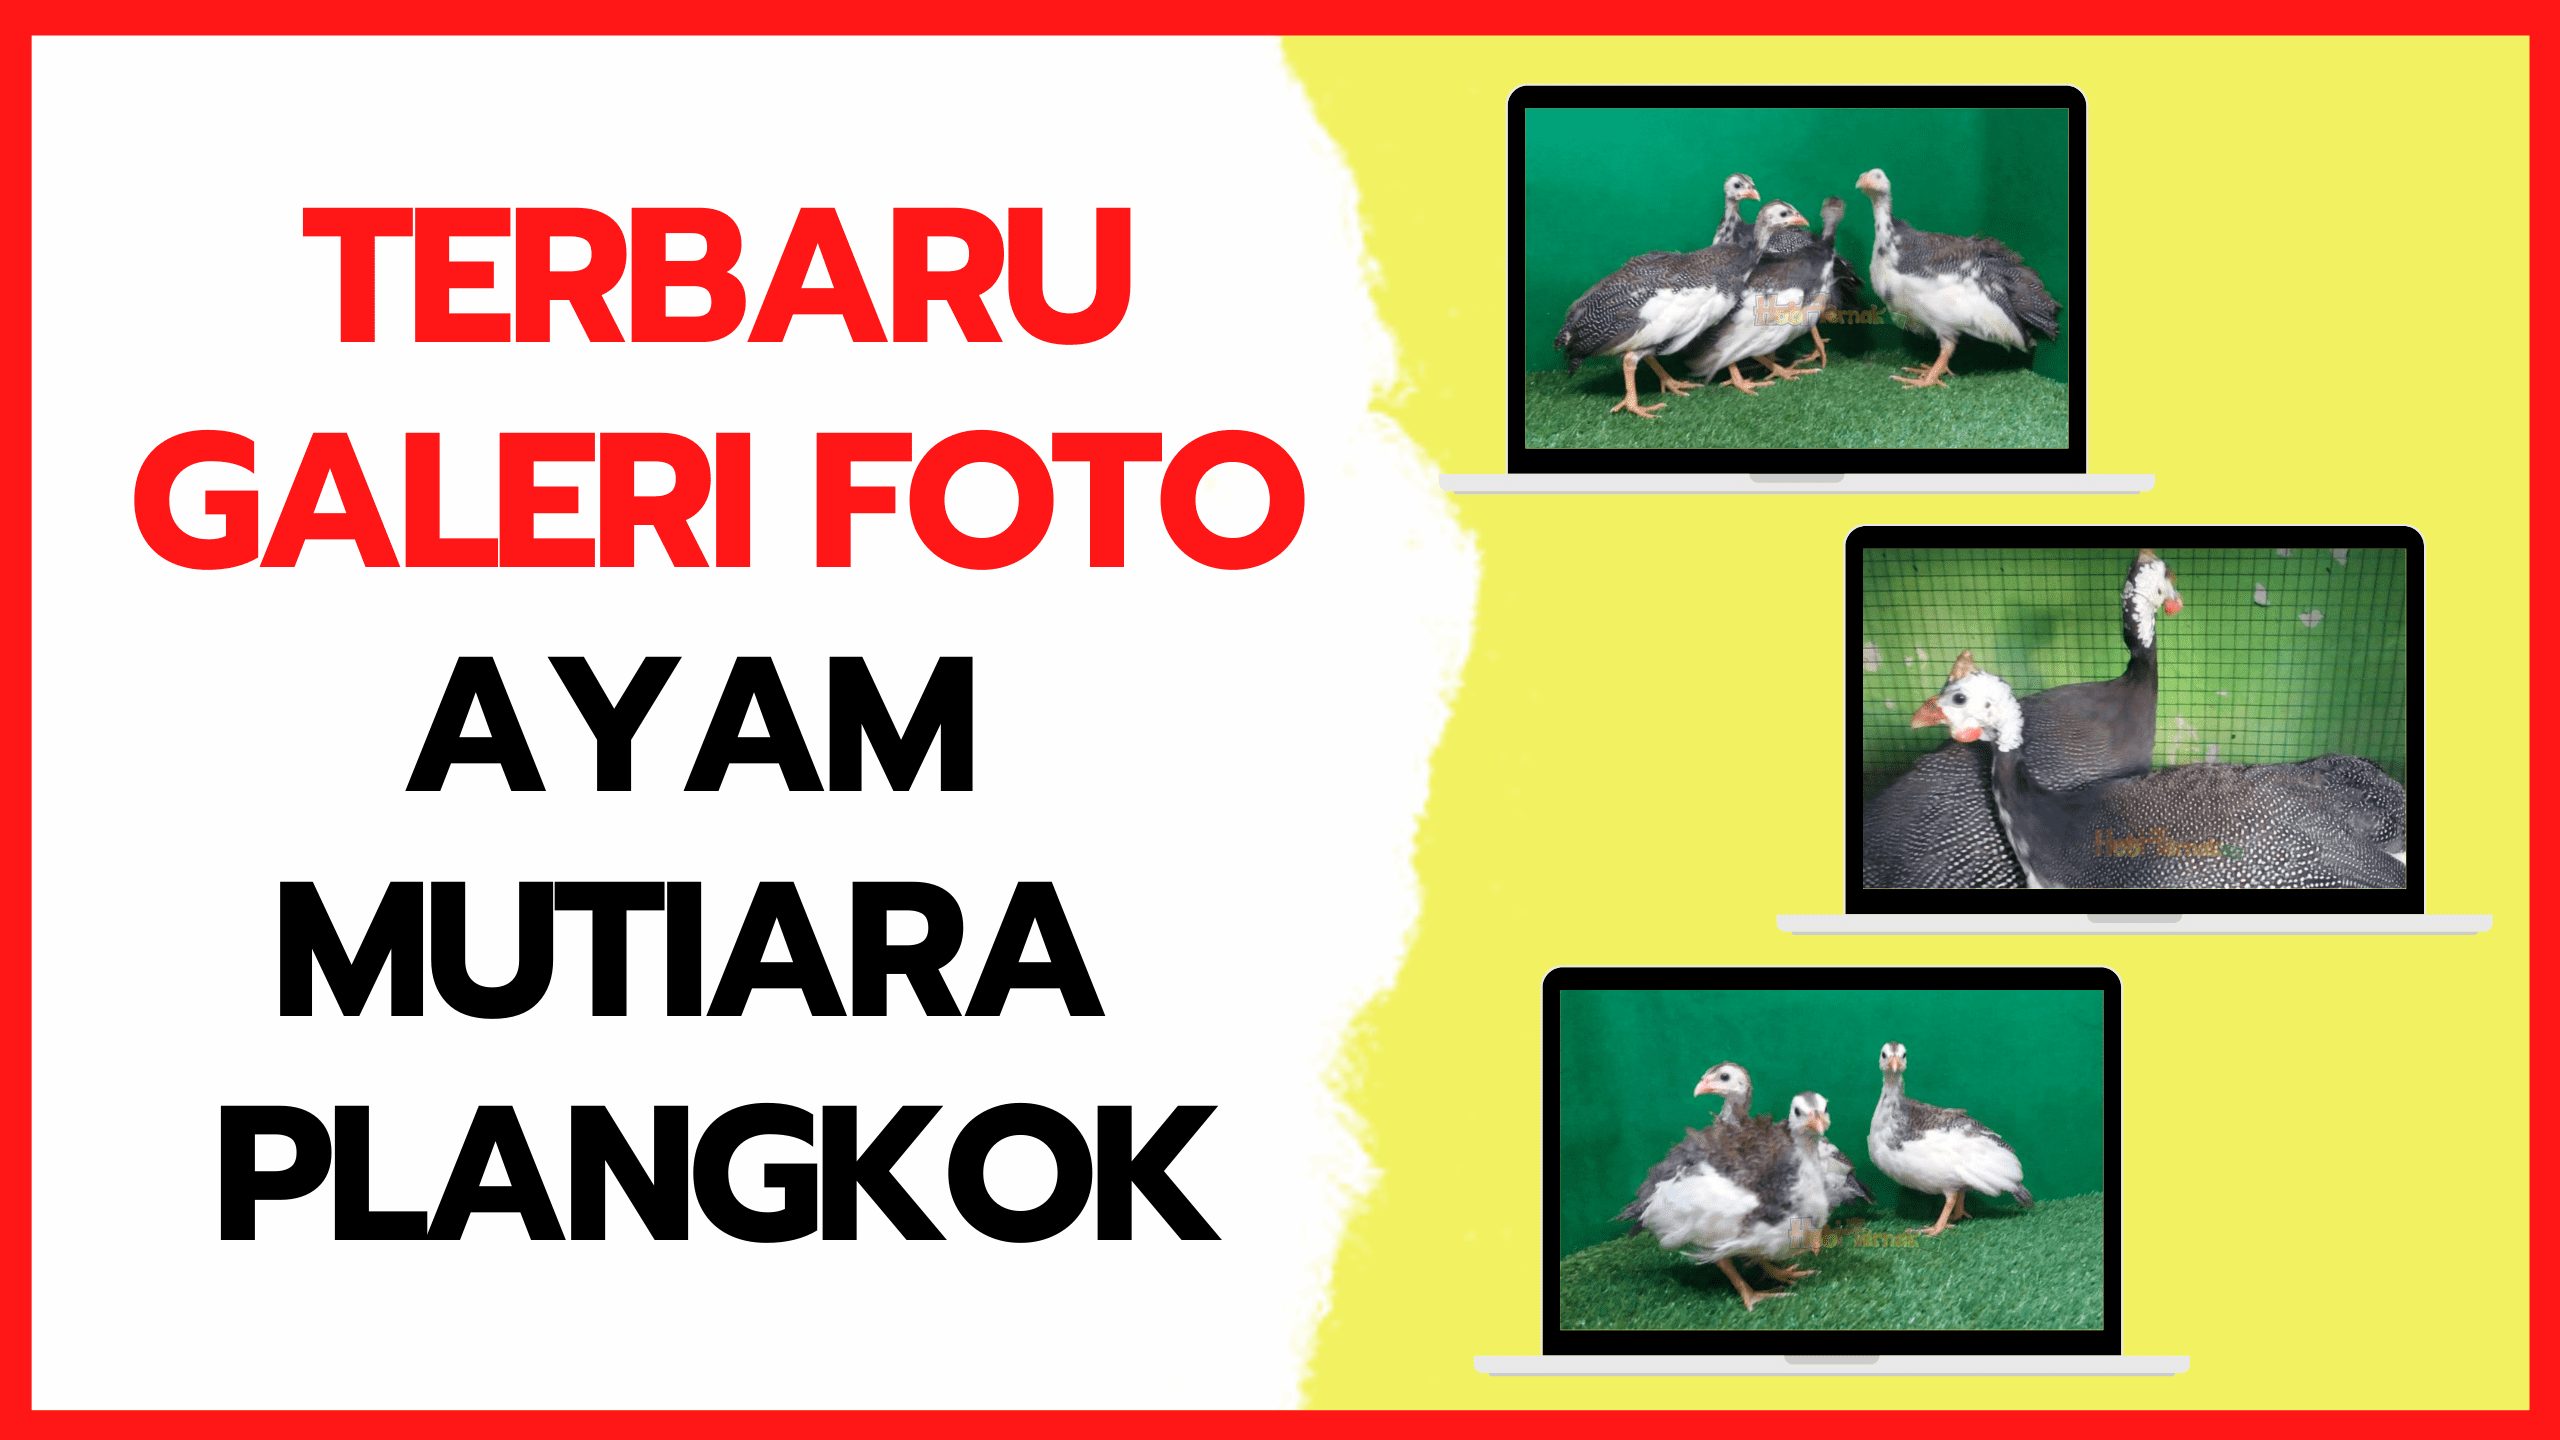 Galeri Foto Ayam Mutiara Plangkok Terbaru